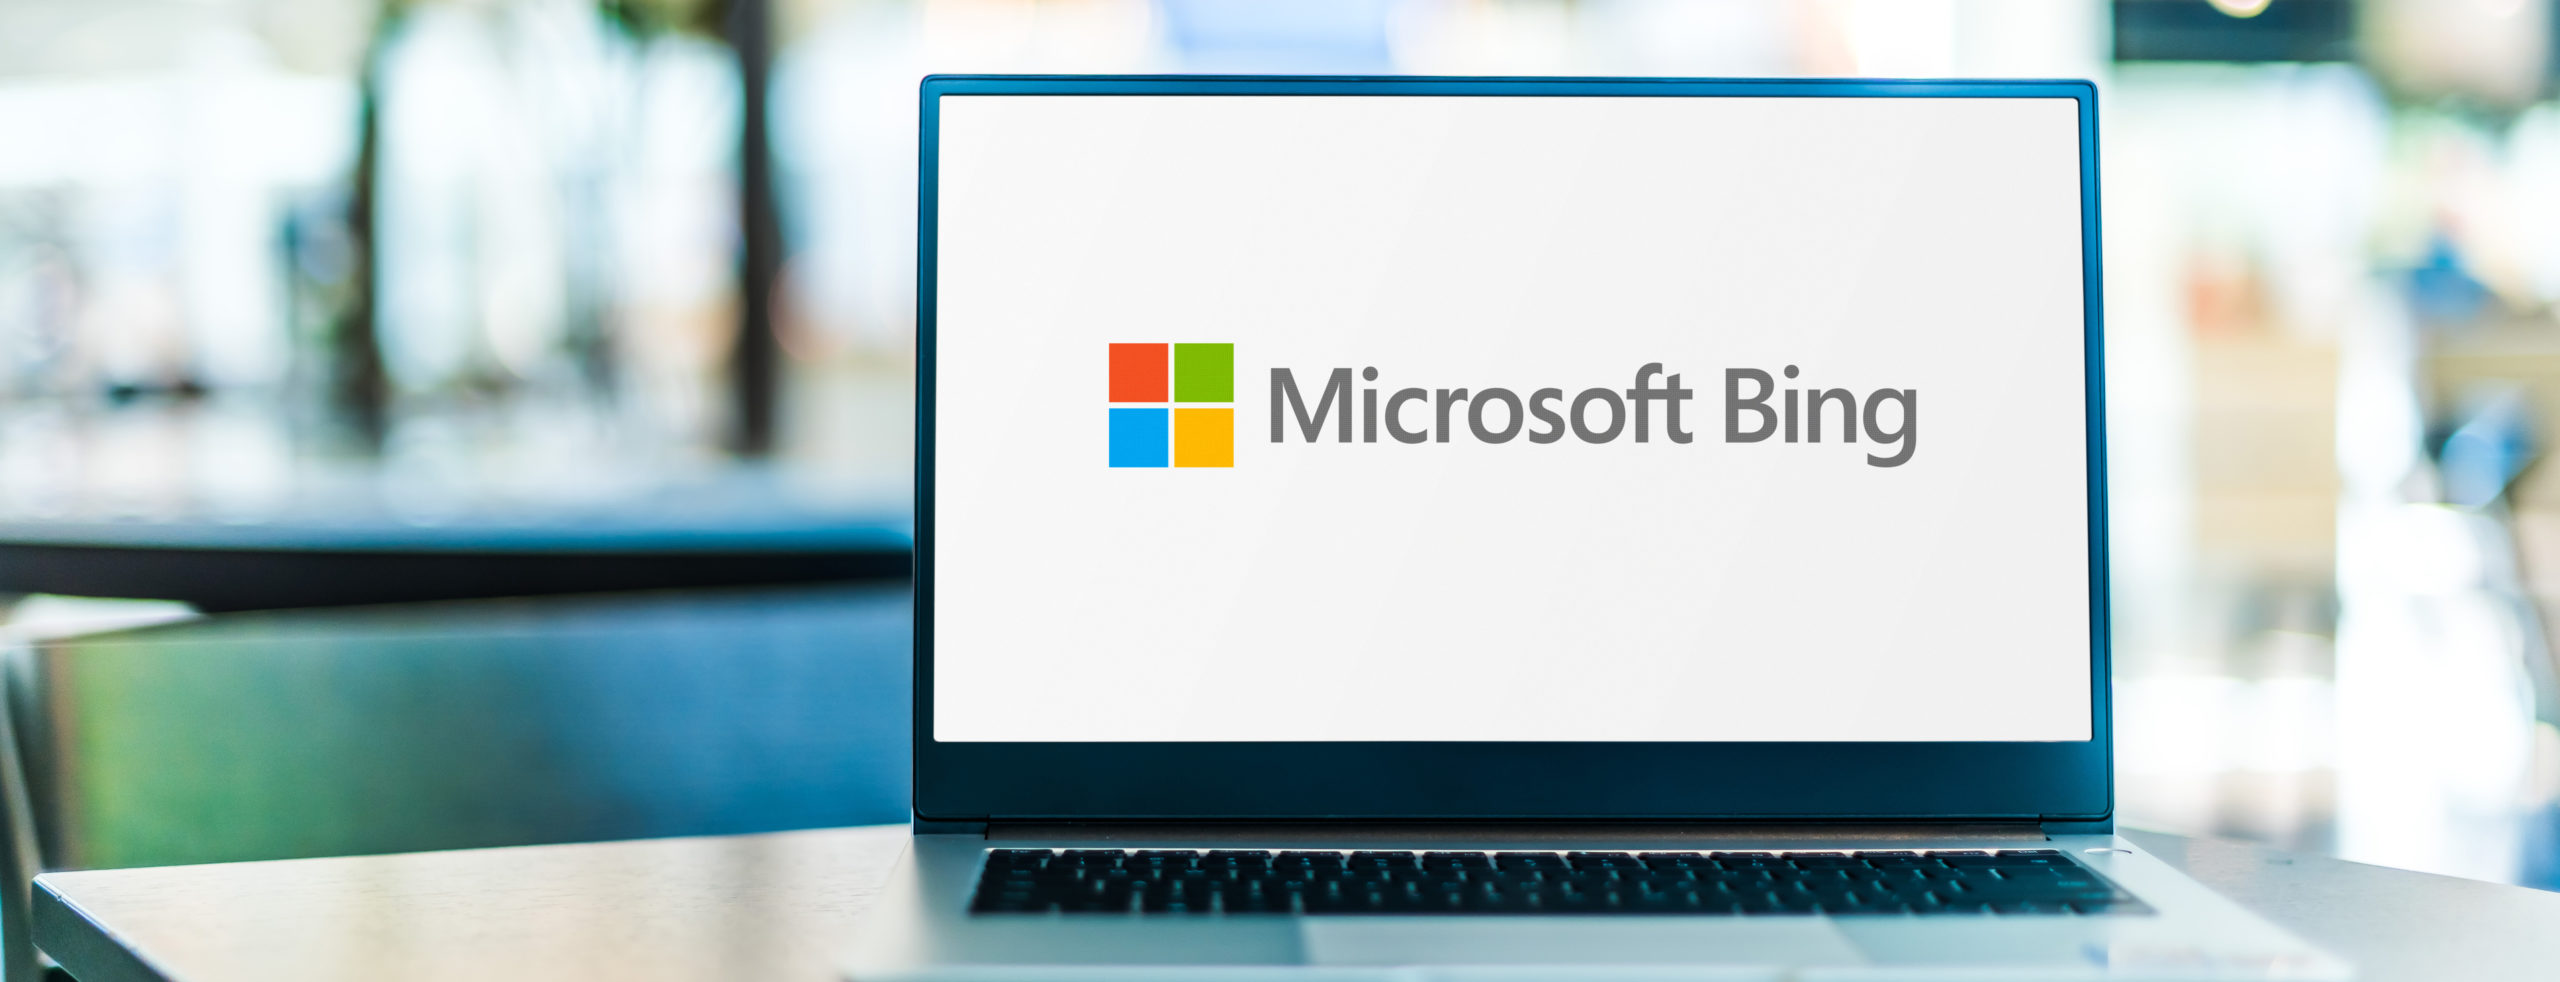 Microsoft Advertising repousse la fin des annonces ETA prévue initialement au 30 juin 2022 et le passage « imposé » aux annonces RSA